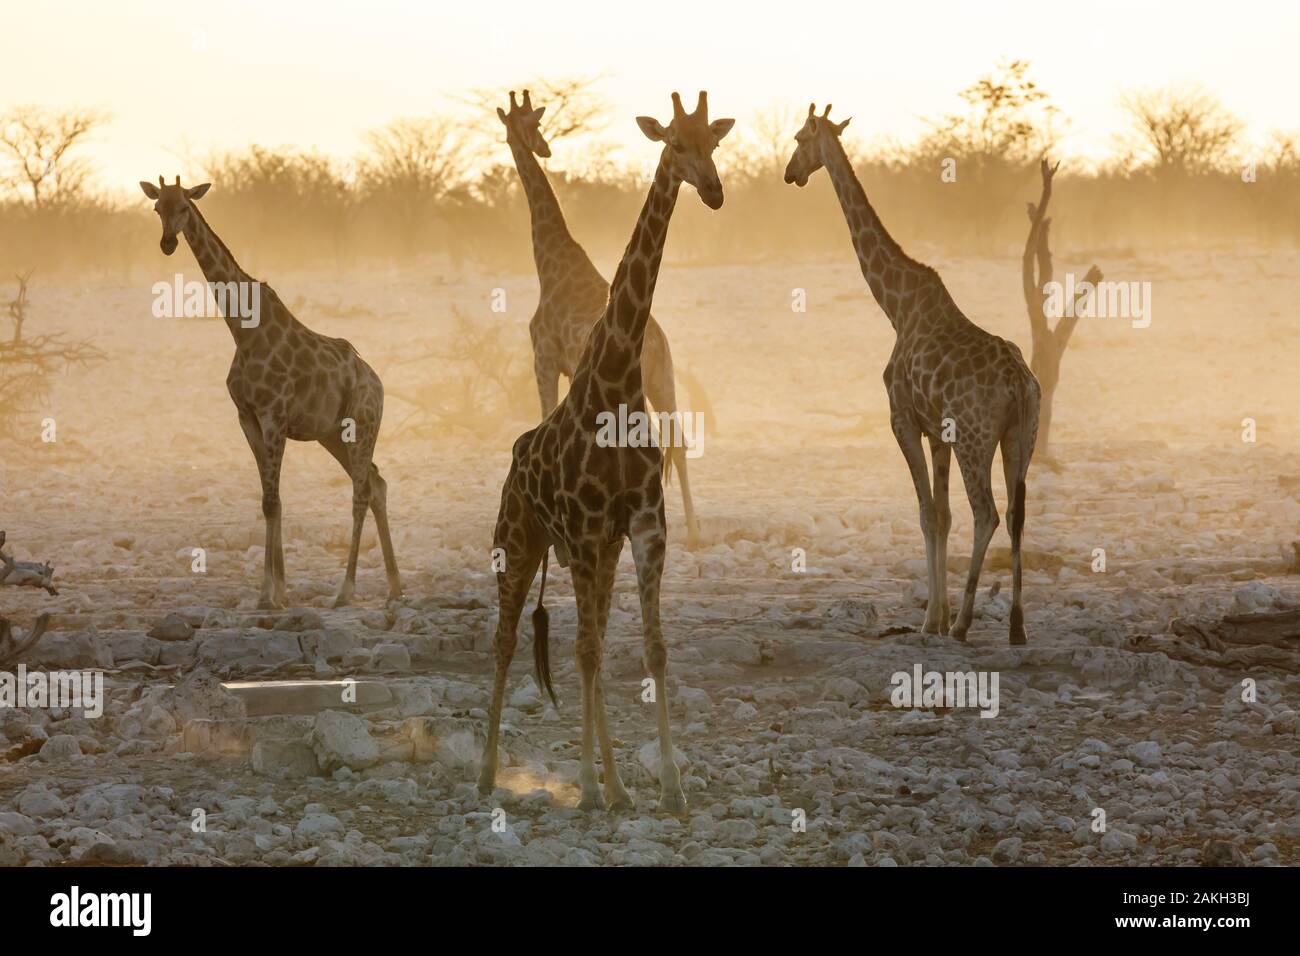 Namibia, Oshikoto province, Etosha National Park, giraffes (Giraffa camelopardalis) at sunset Stock Photo